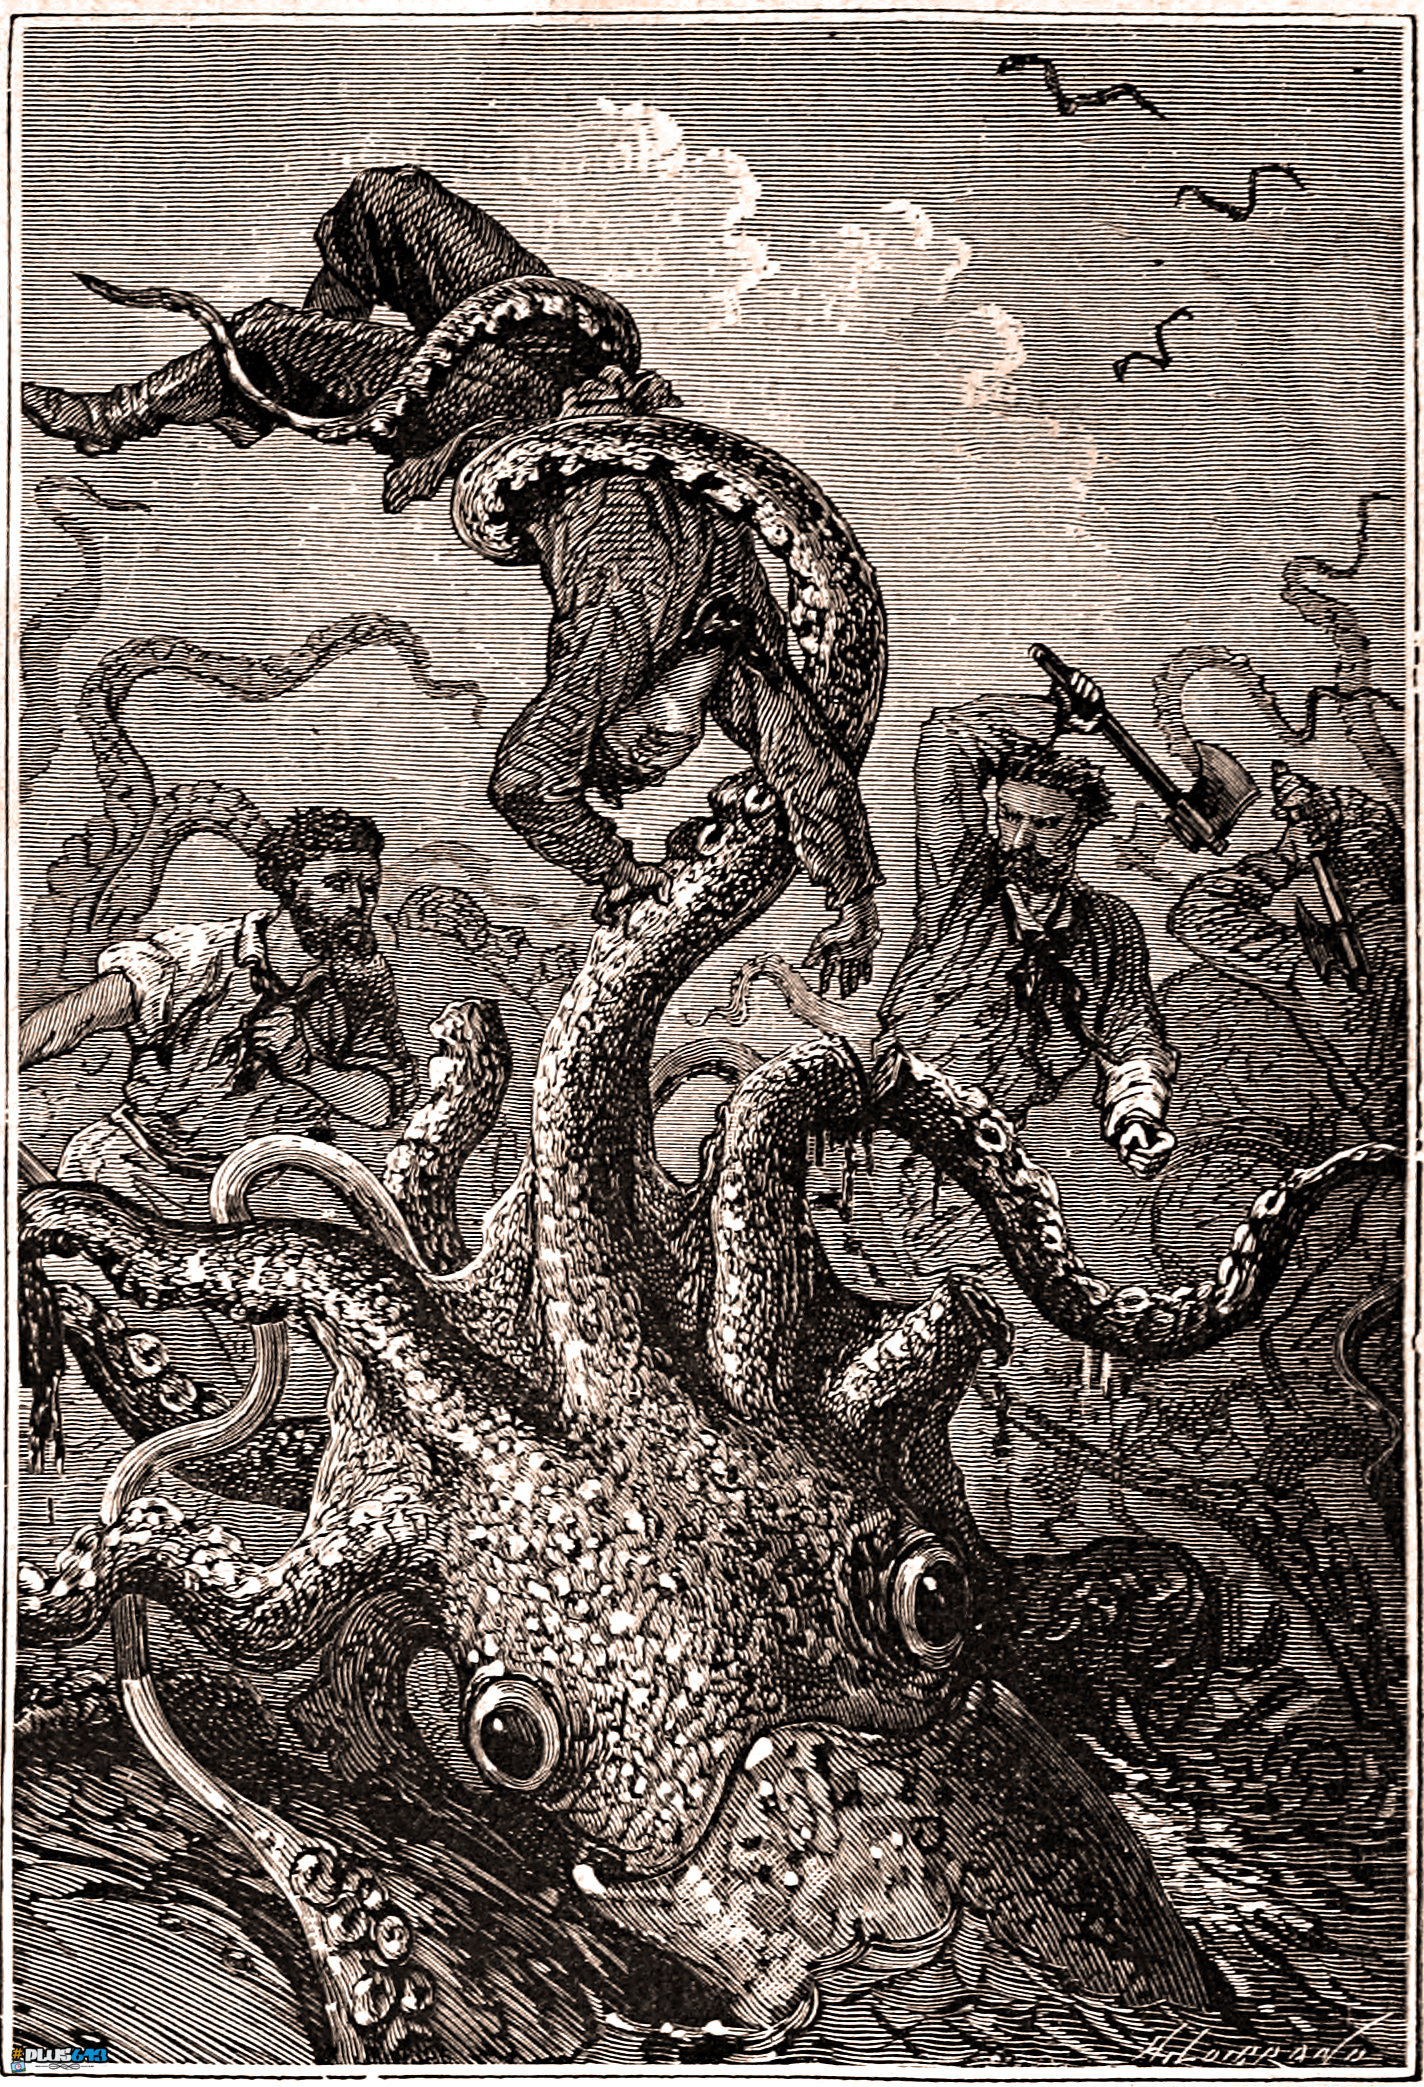 Alphonse de Neuville - 20000 leagues under the sea squid